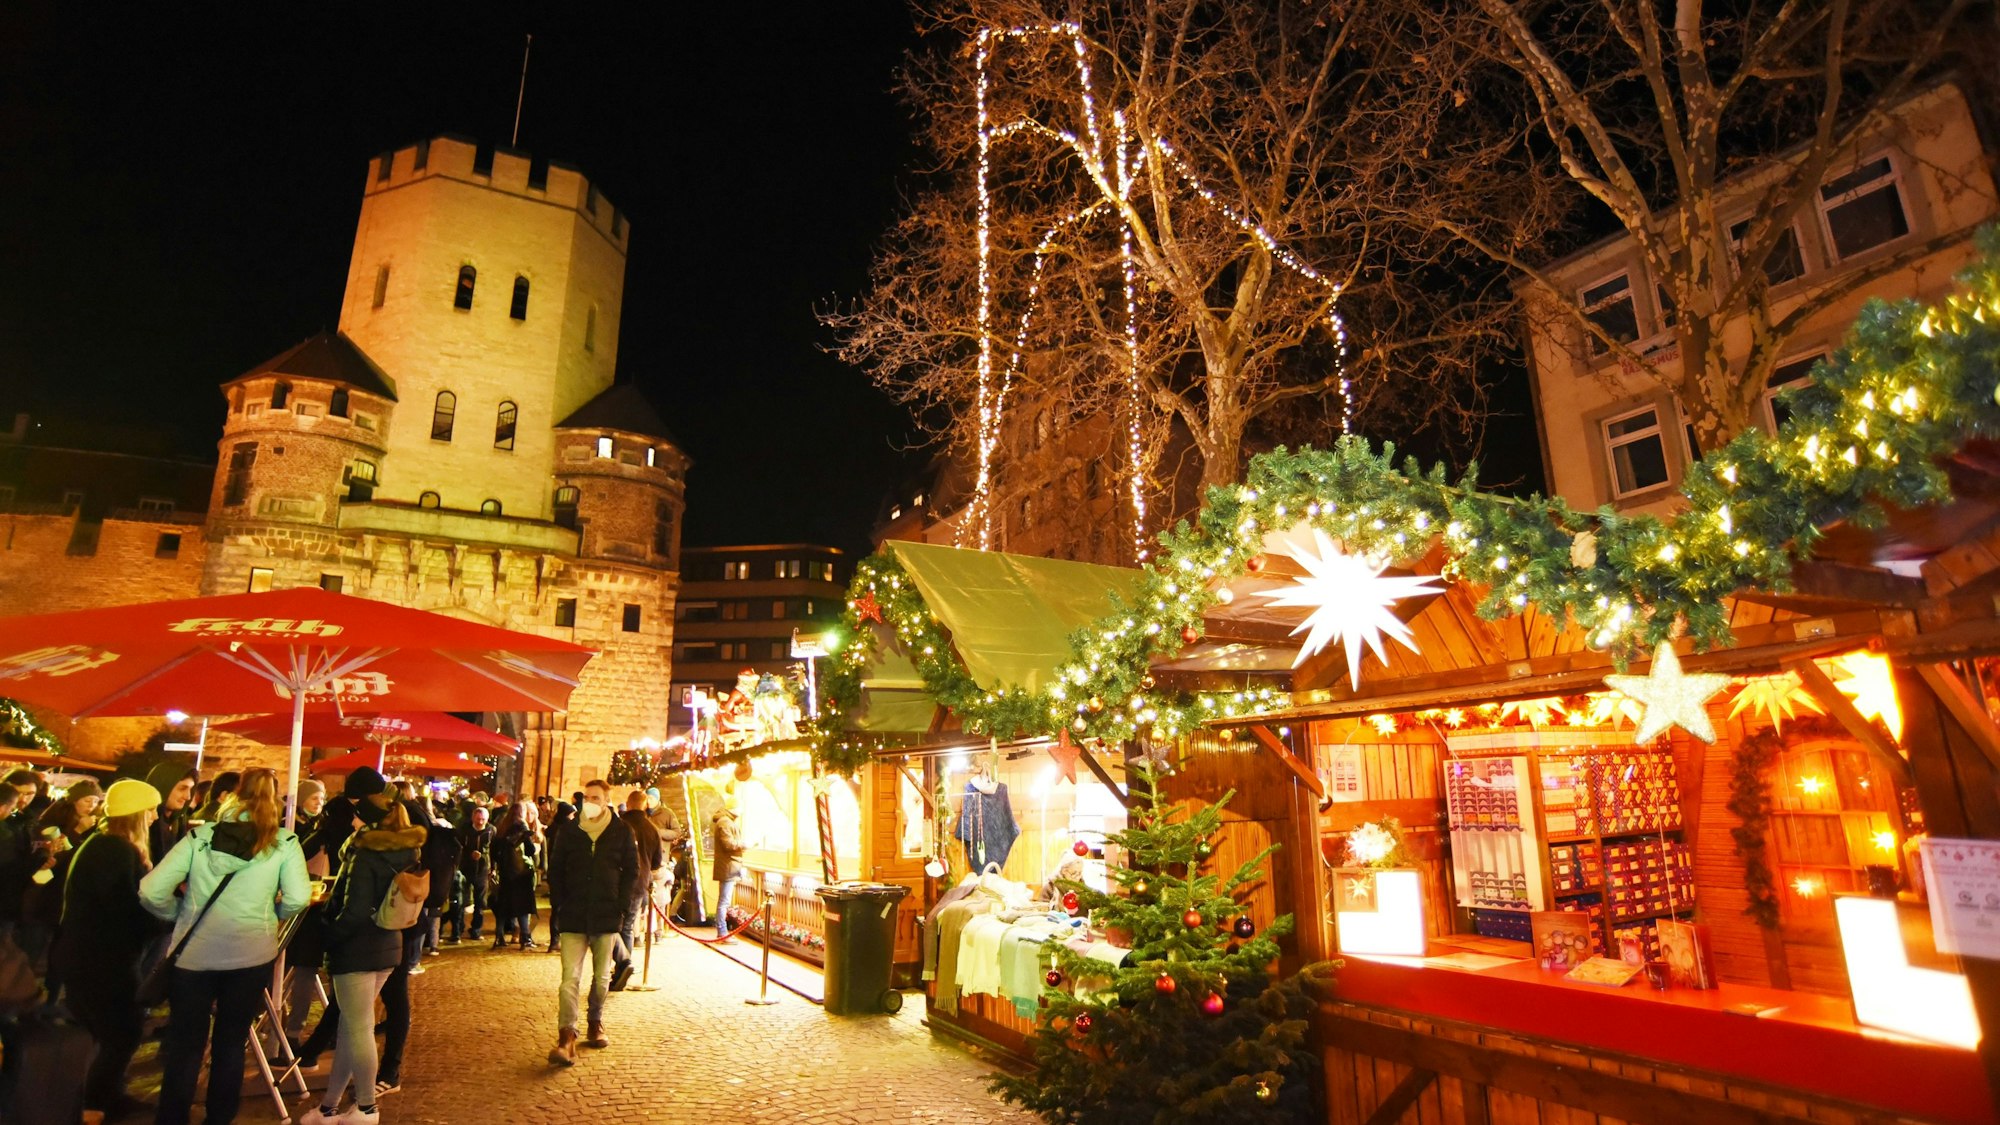 Weihnachtsmarkt auf dem Chlodwigplatz.